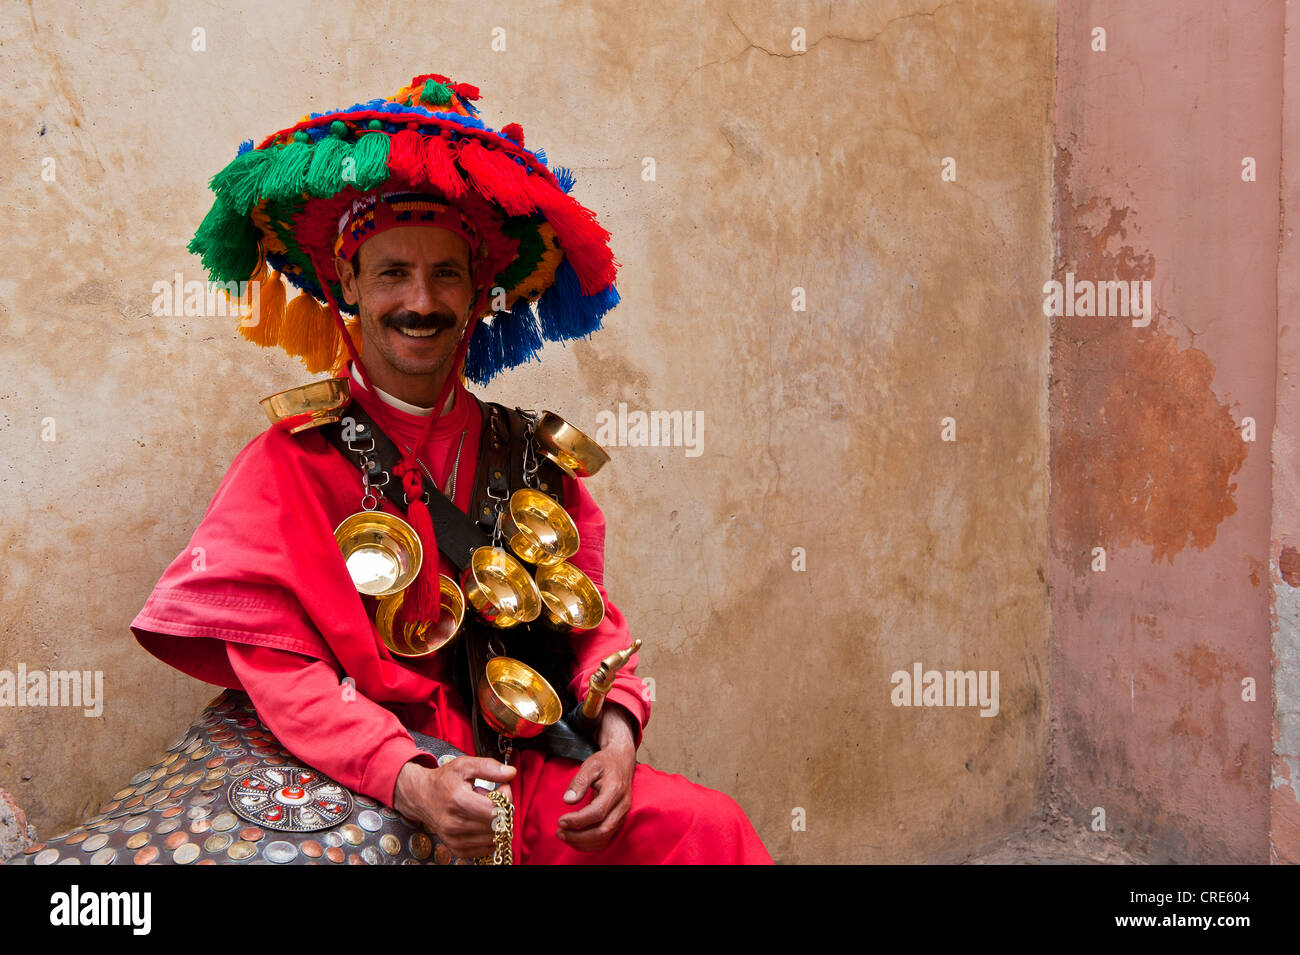 Vettore acqua, indossando abiti tradizionali e ciotole di acqua in ottone, seduto contro un muro, Marrakech, Marocco, Africa Foto Stock